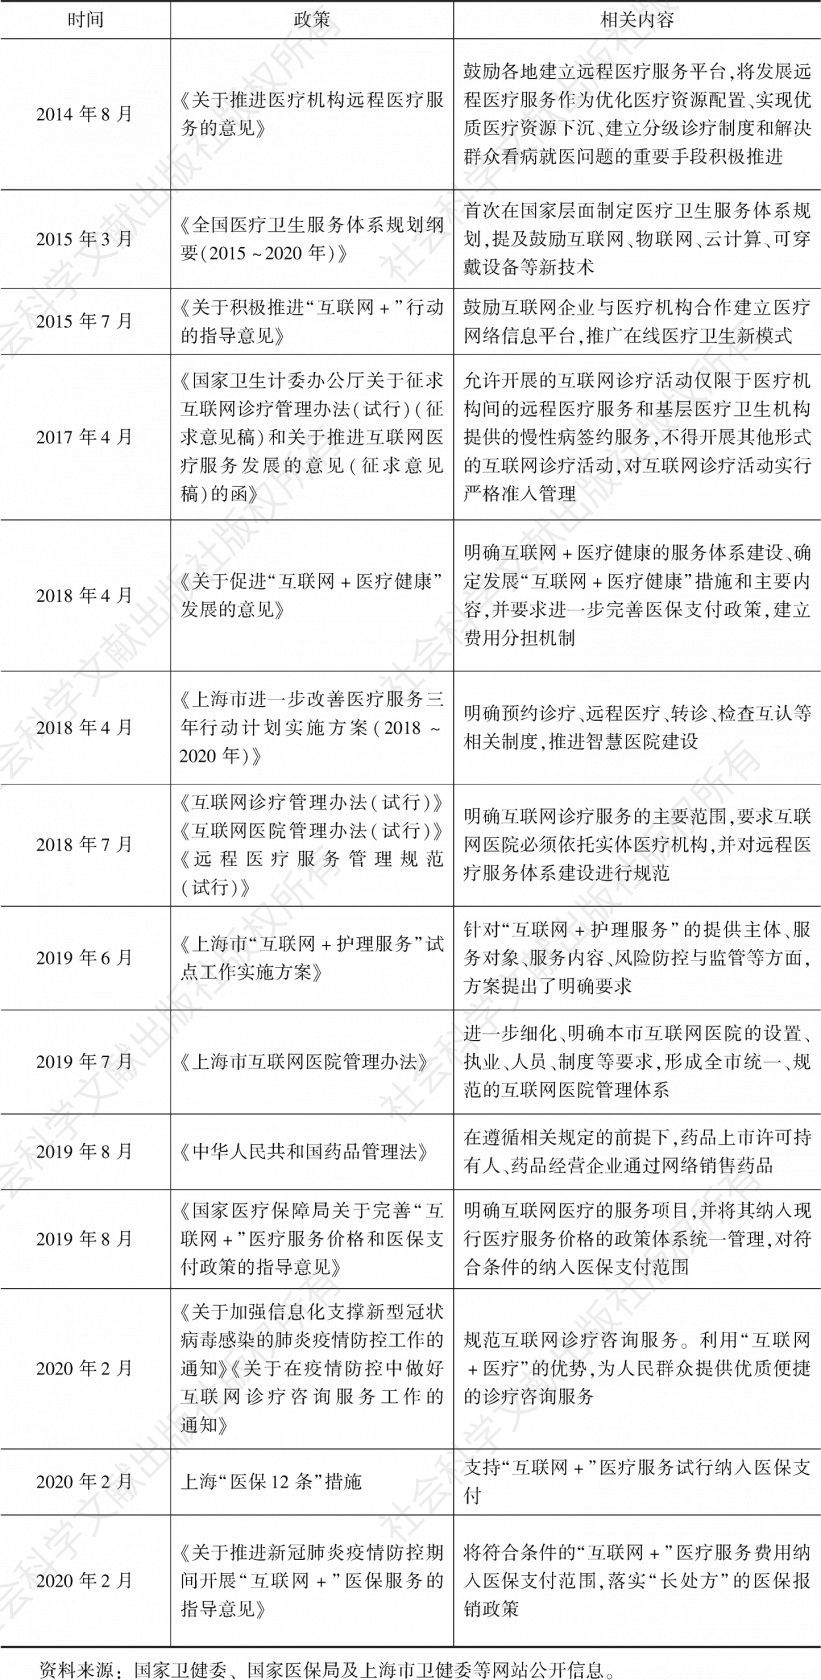 表3 中央及上海在线医疗发展相关政策